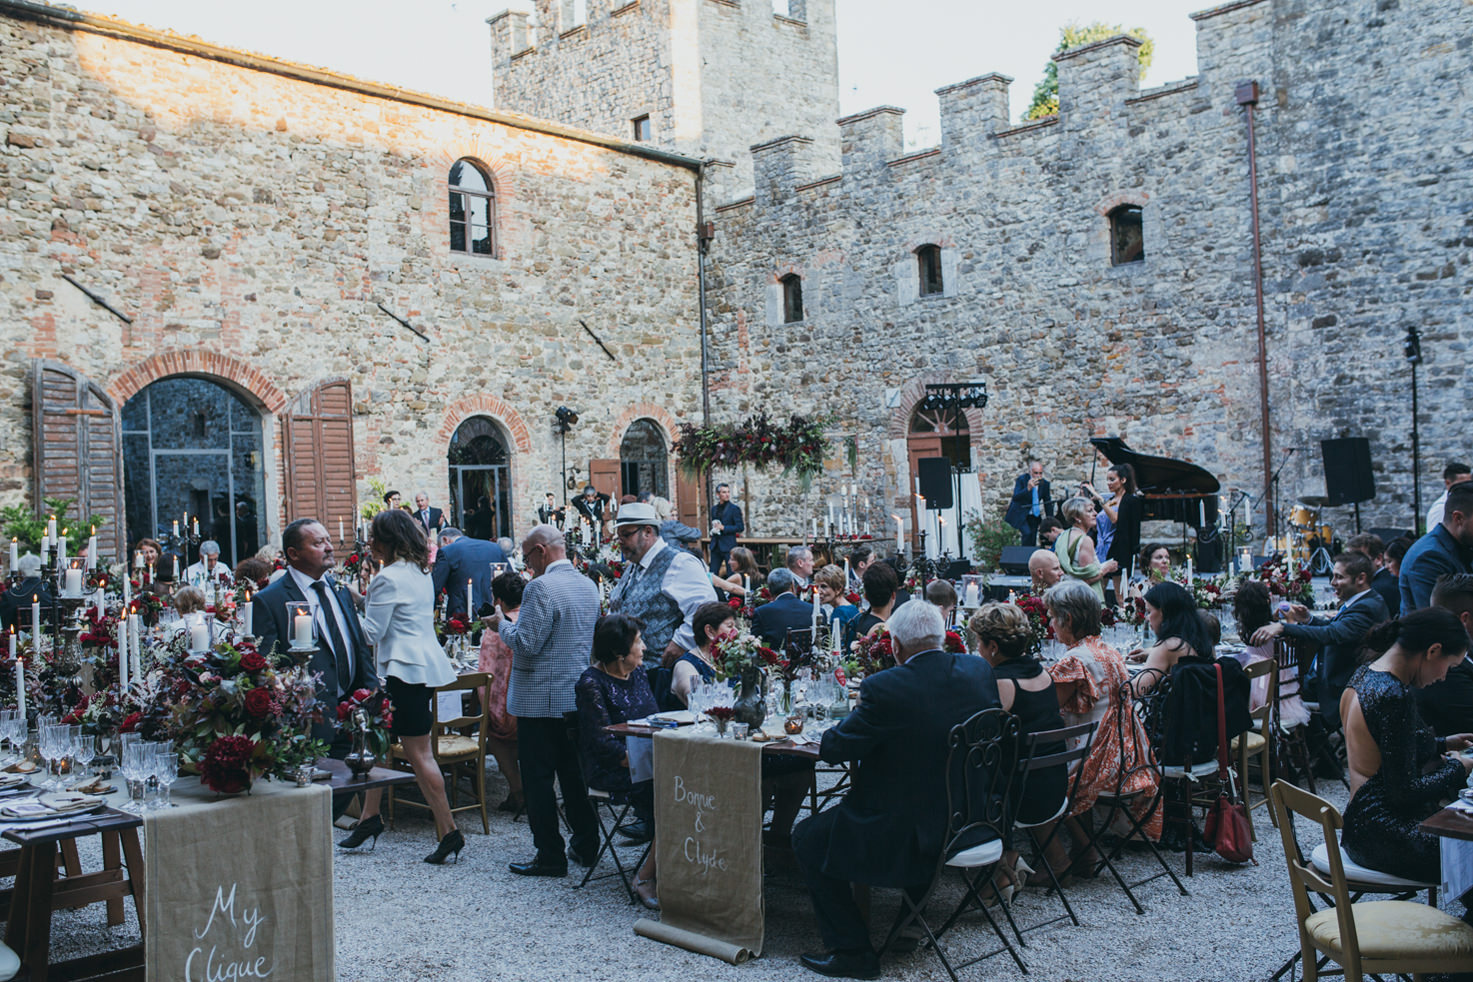 Wedding banquet at Castello di Modanella